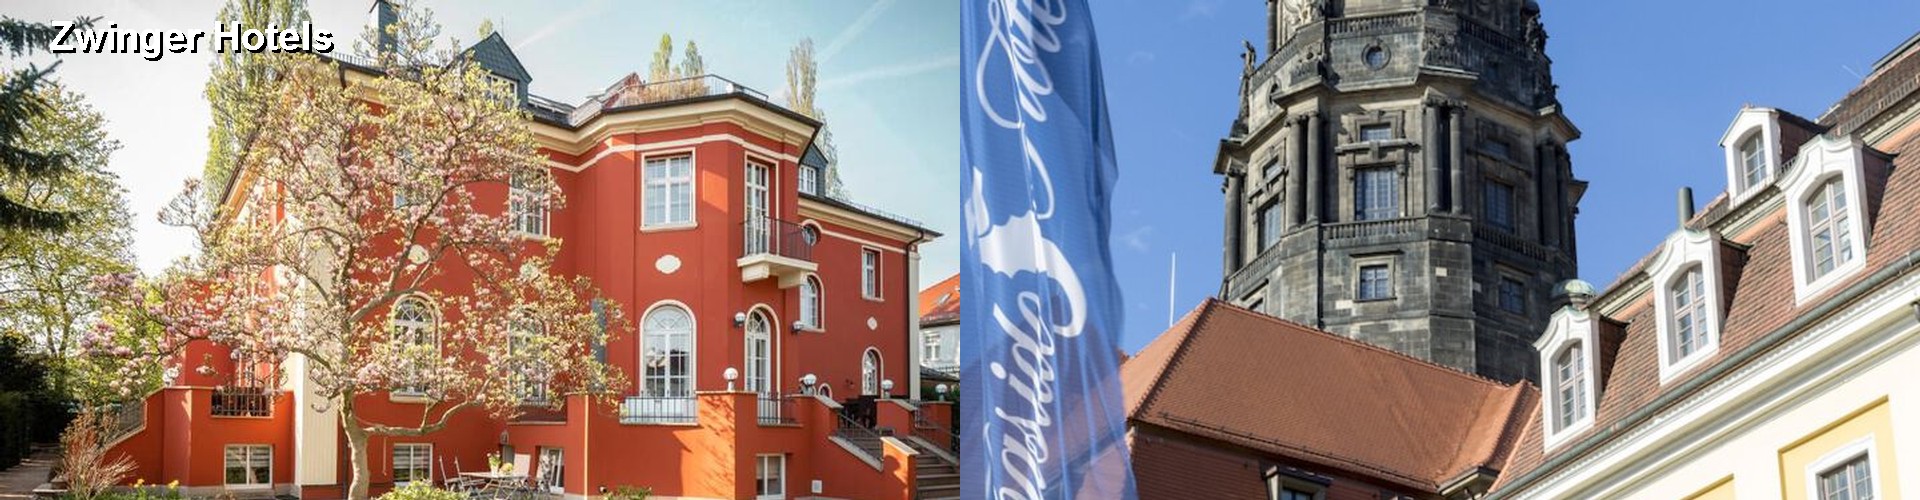 5 Best Hotels near Zwinger